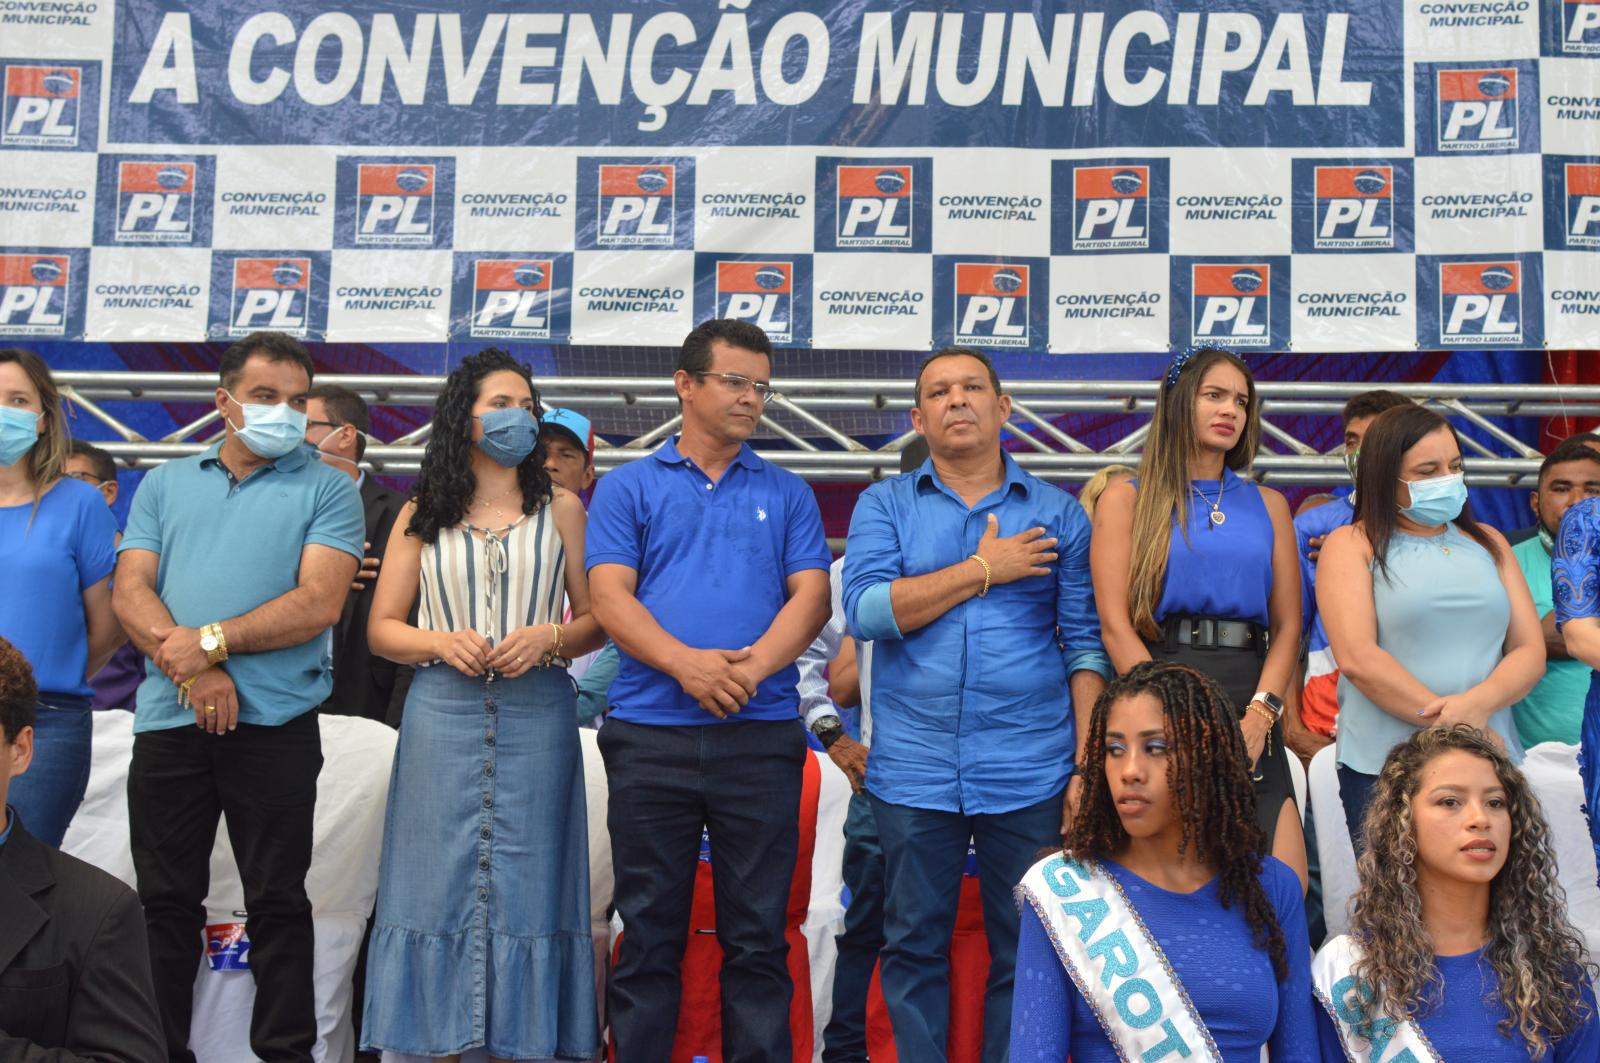 Ney Passinho e Dr. Lindomar, no meio da semana, levam multidão para convenção e confirmam sua força política